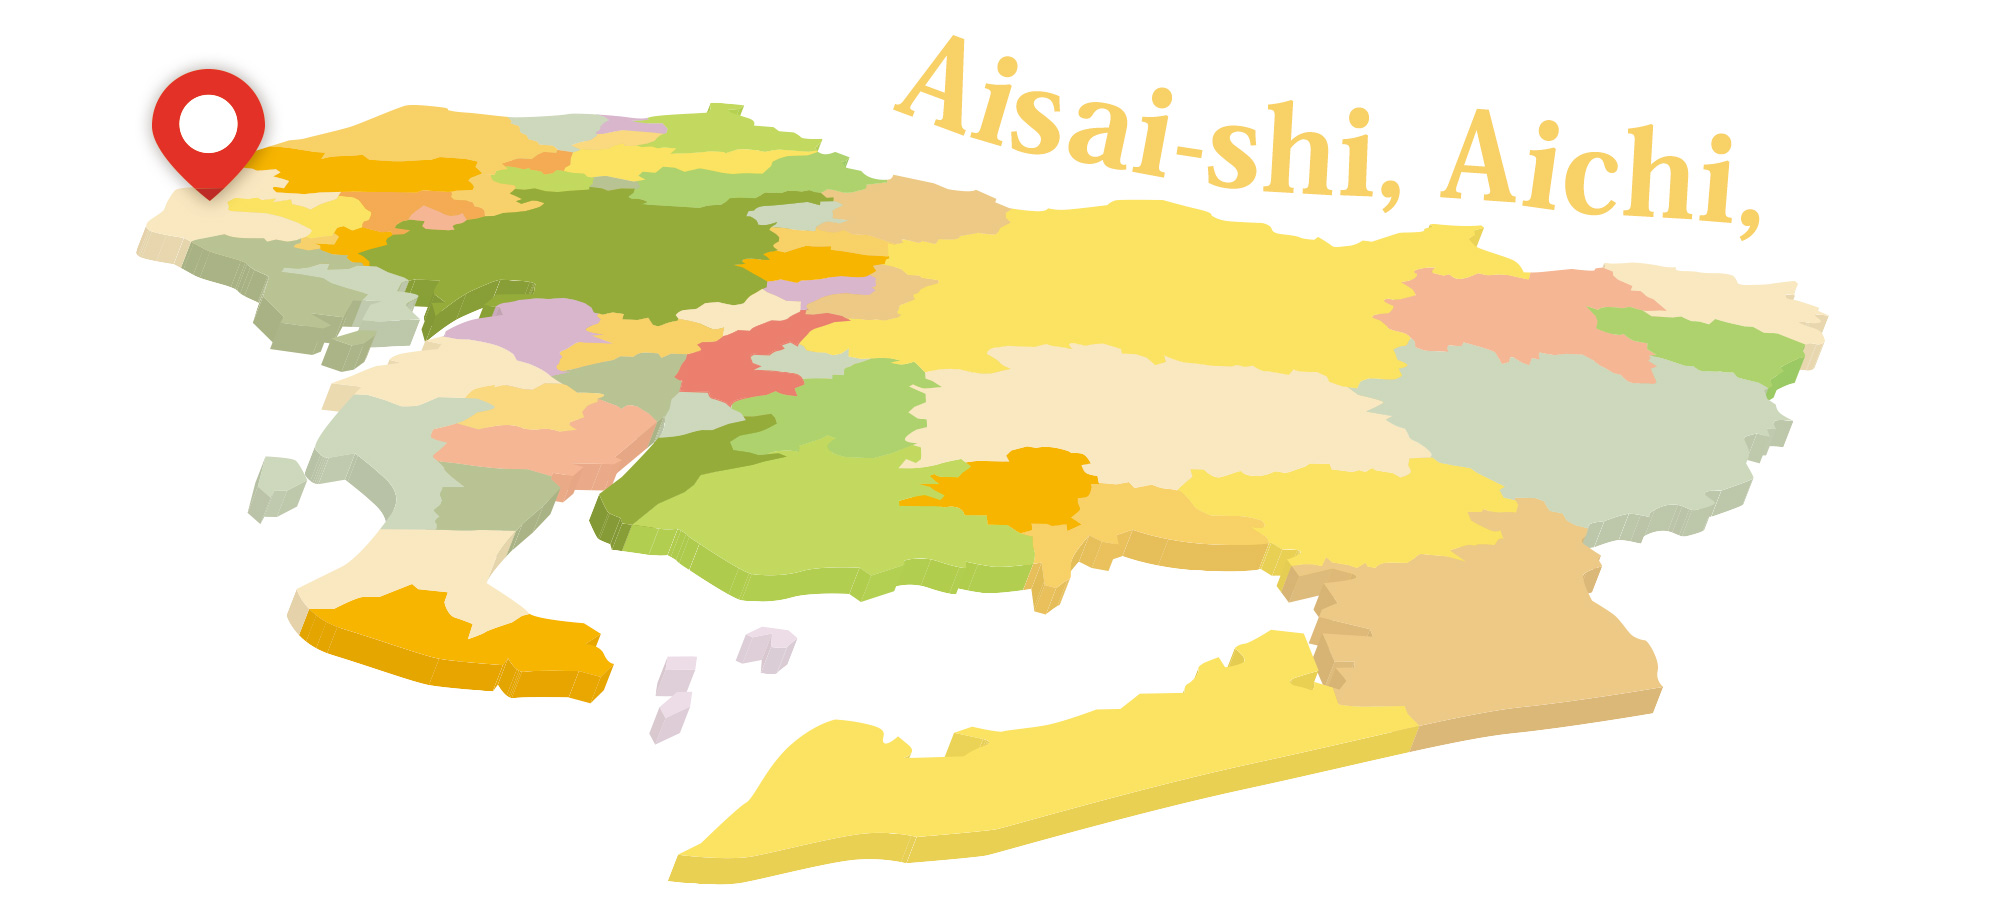 愛知県刈谷市を拠点とし、映像制作や動画制作を行っているHasshin-Creatorsについて。